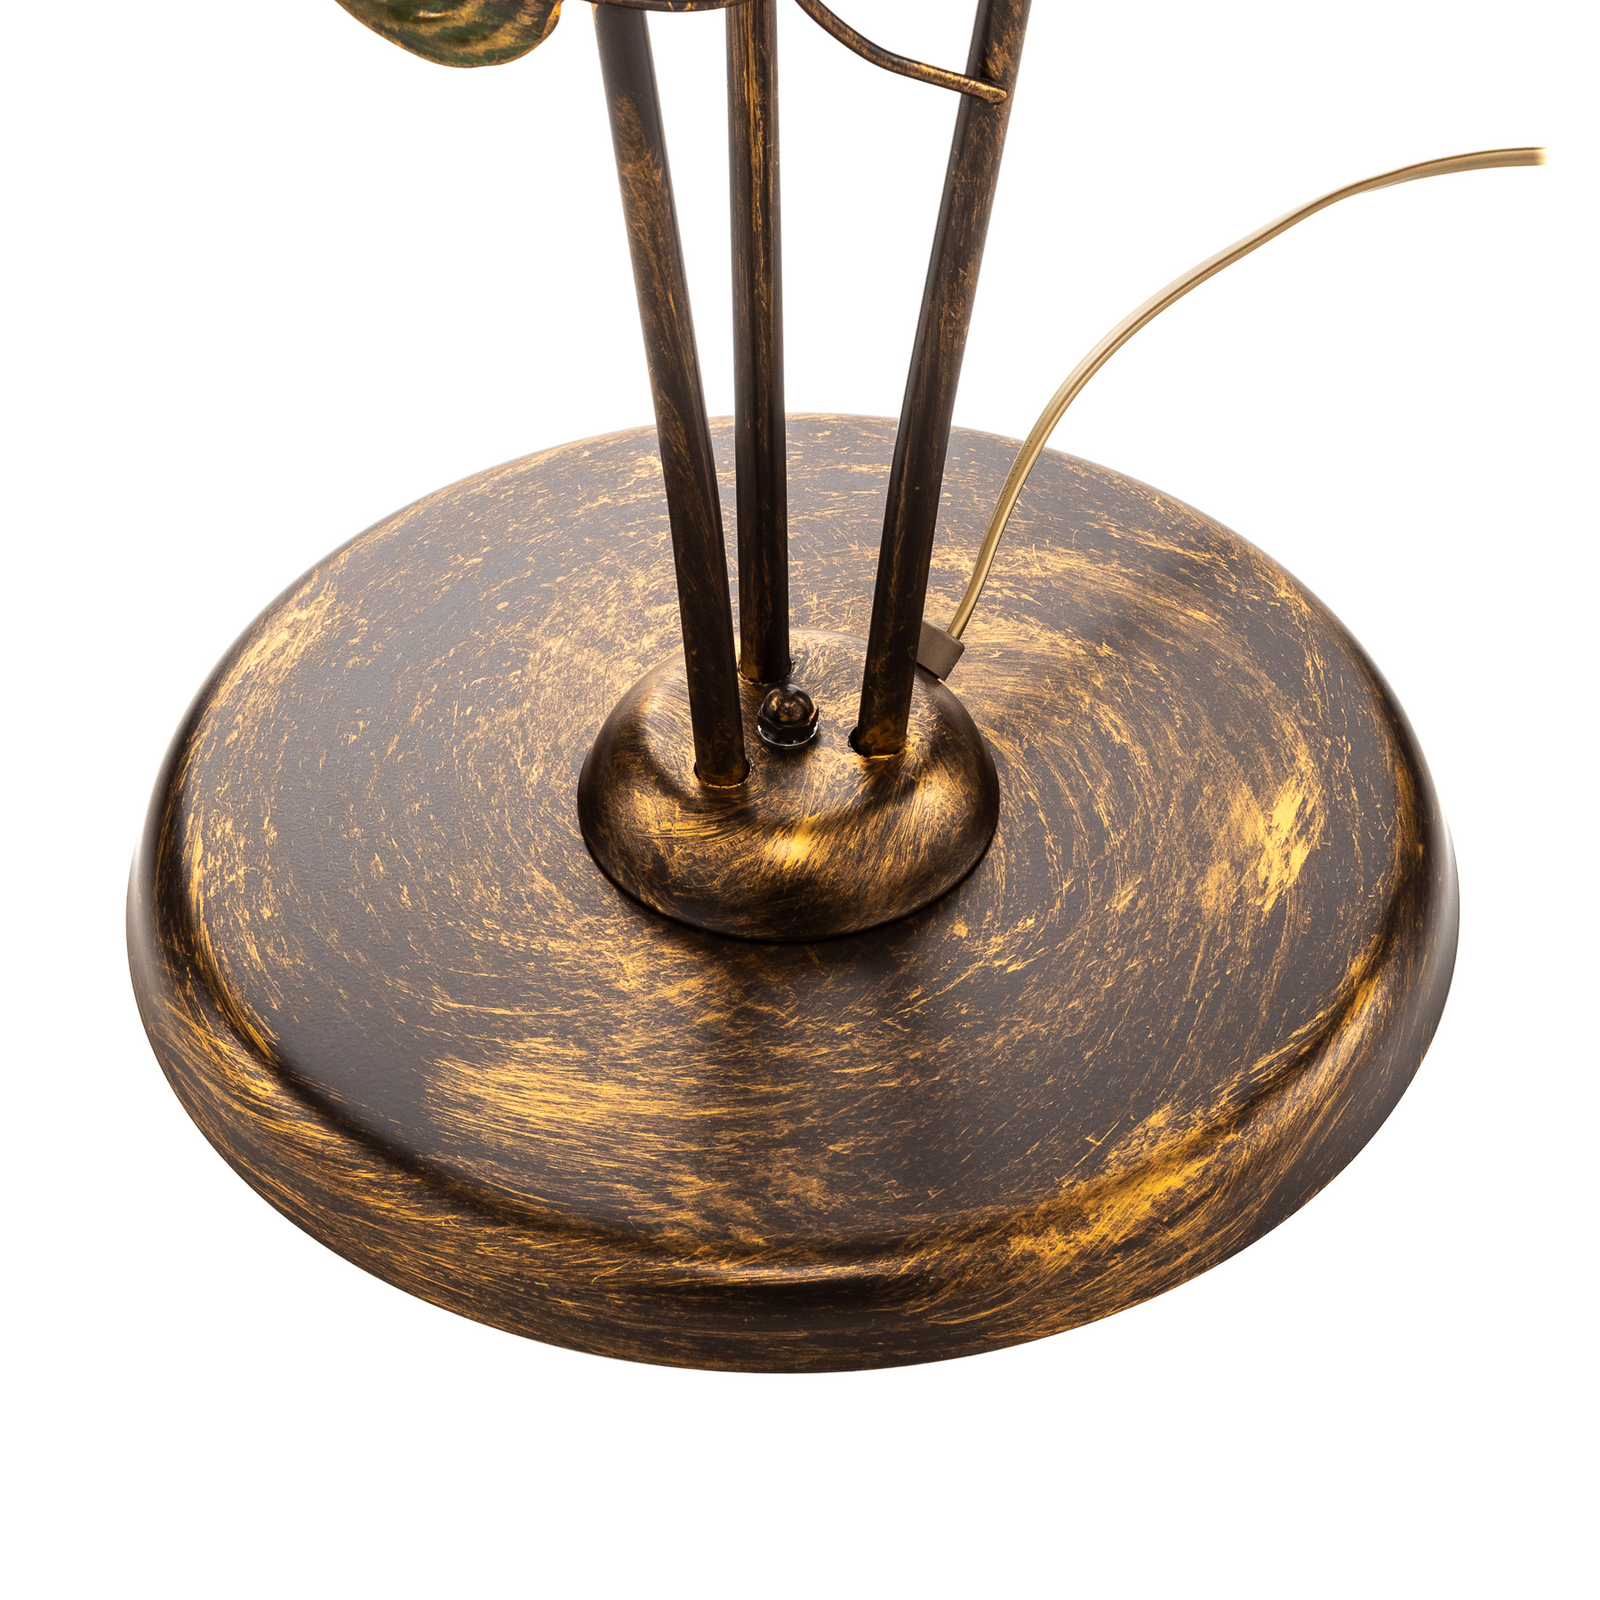 Lampa stojąca Miranda styl florencki, brązowa